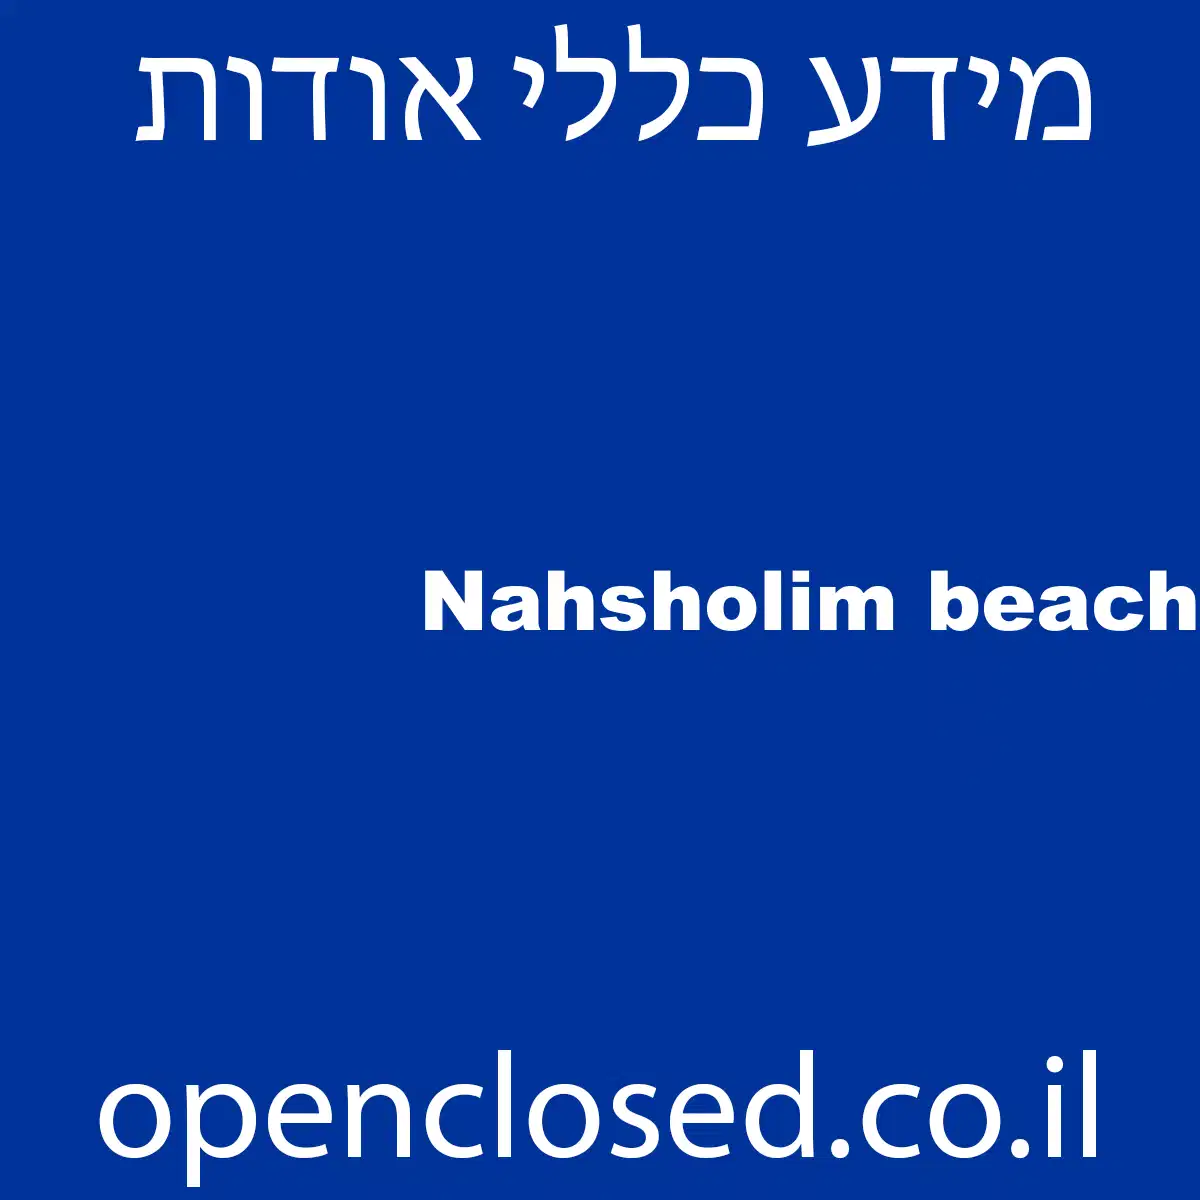 Nahsholim beach